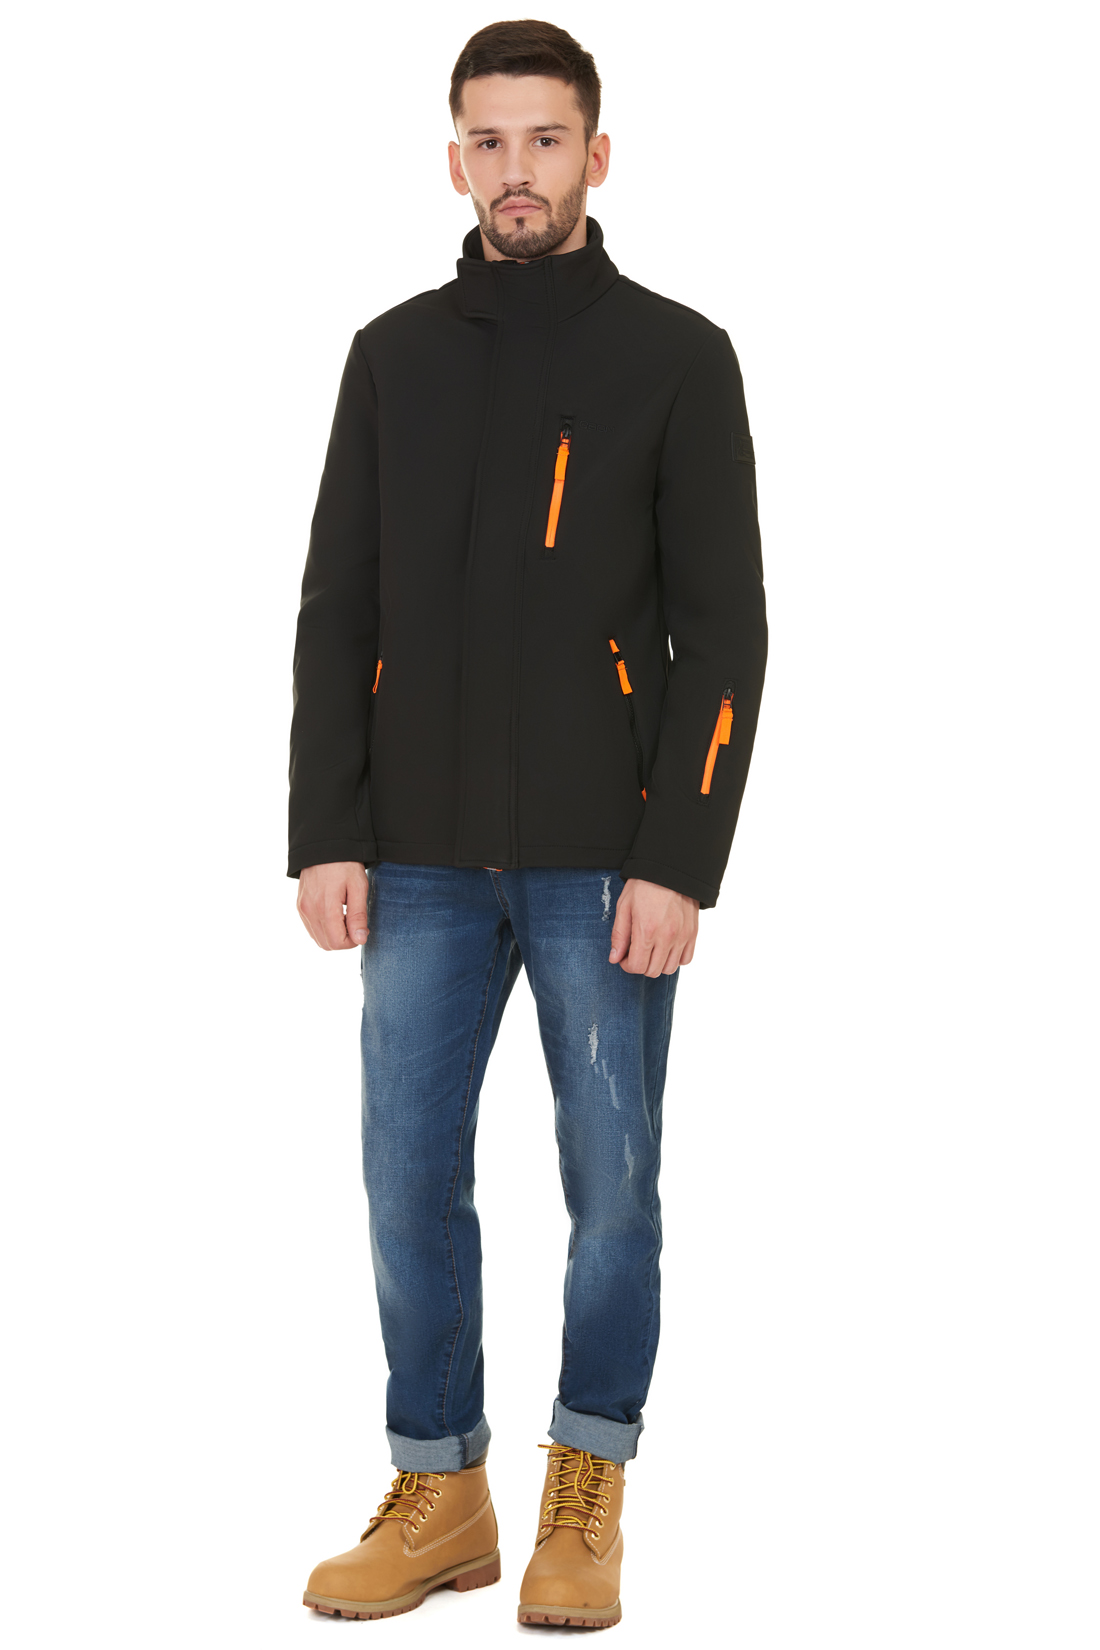 Куртка из виндблока (арт. baon B537504), размер M, цвет черный Куртка из виндблока (арт. baon B537504) - фото 5